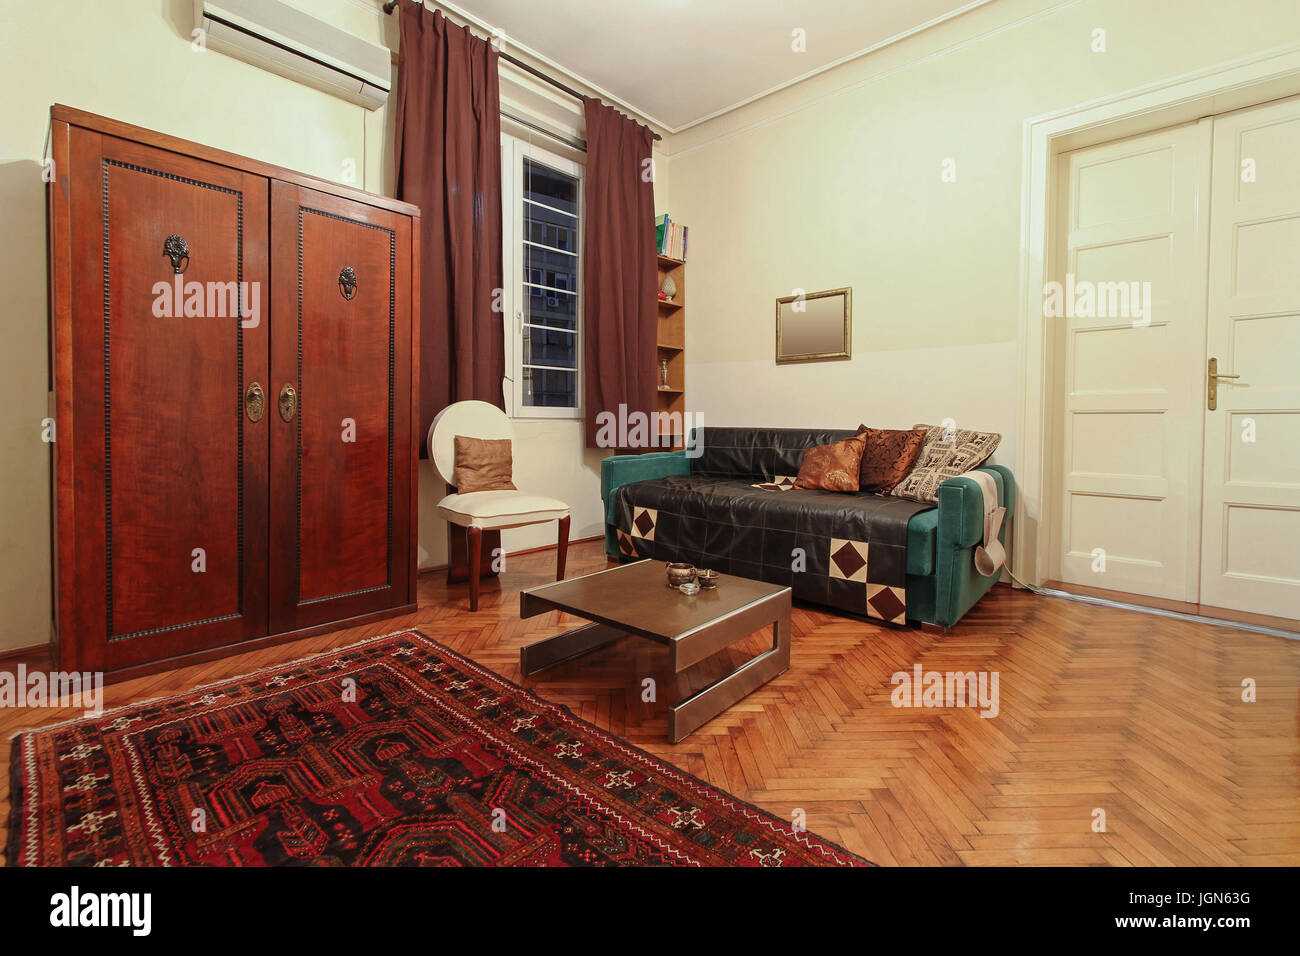 Muebles de estilo retro en casa vieja interior Foto de stock